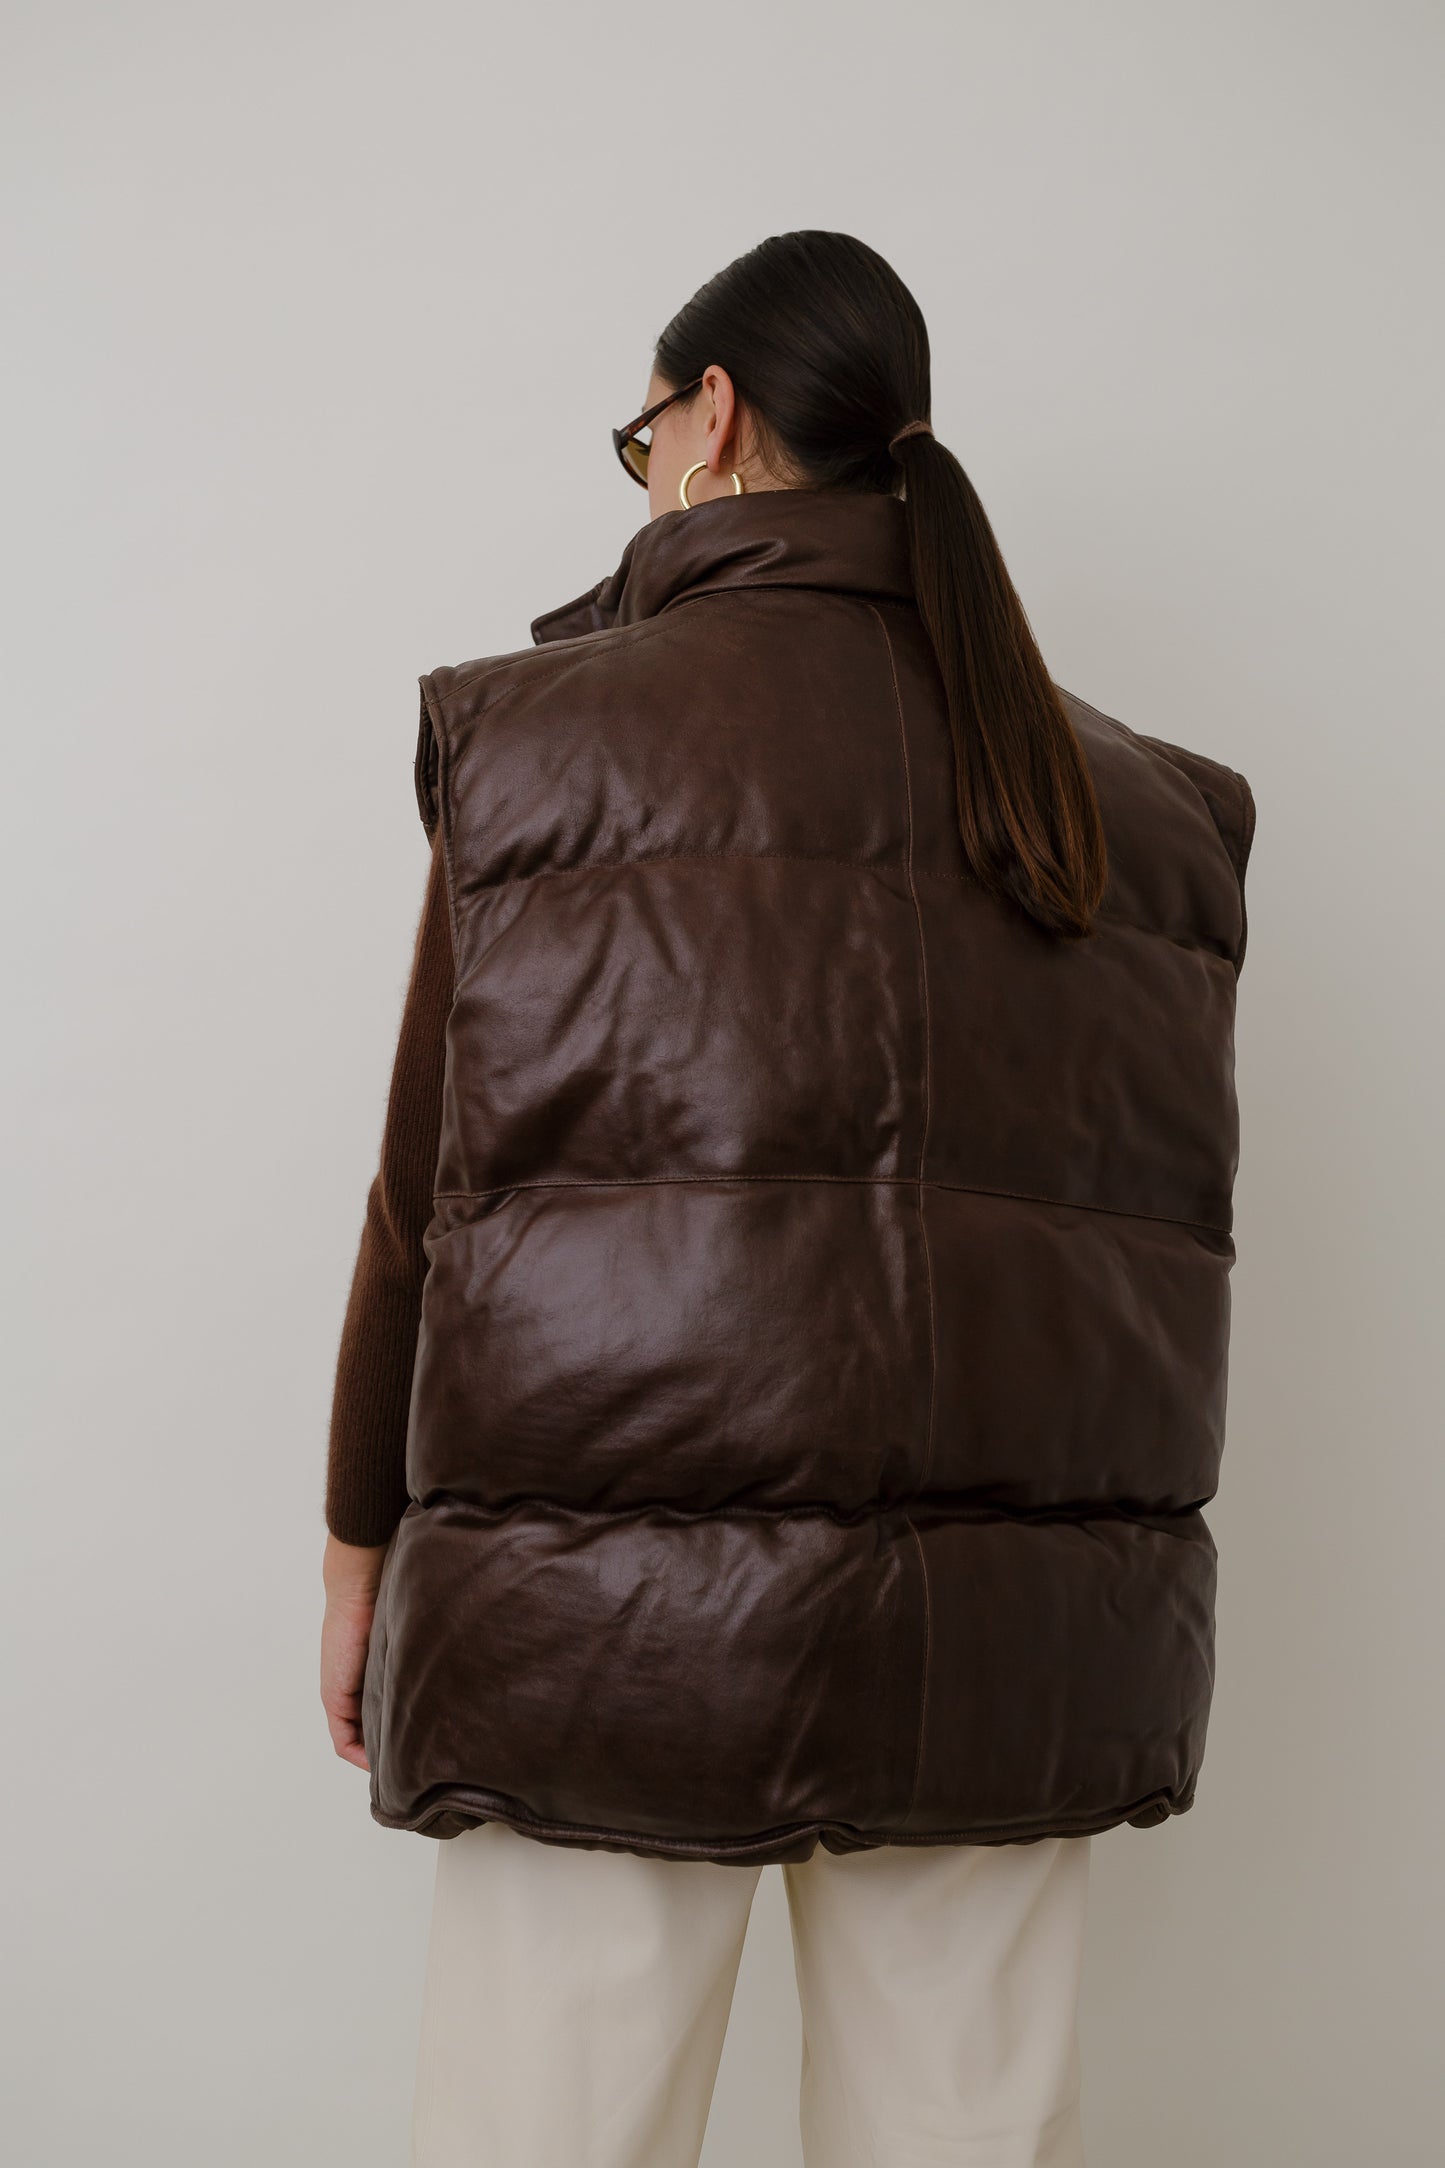 Biker's padded leather vest